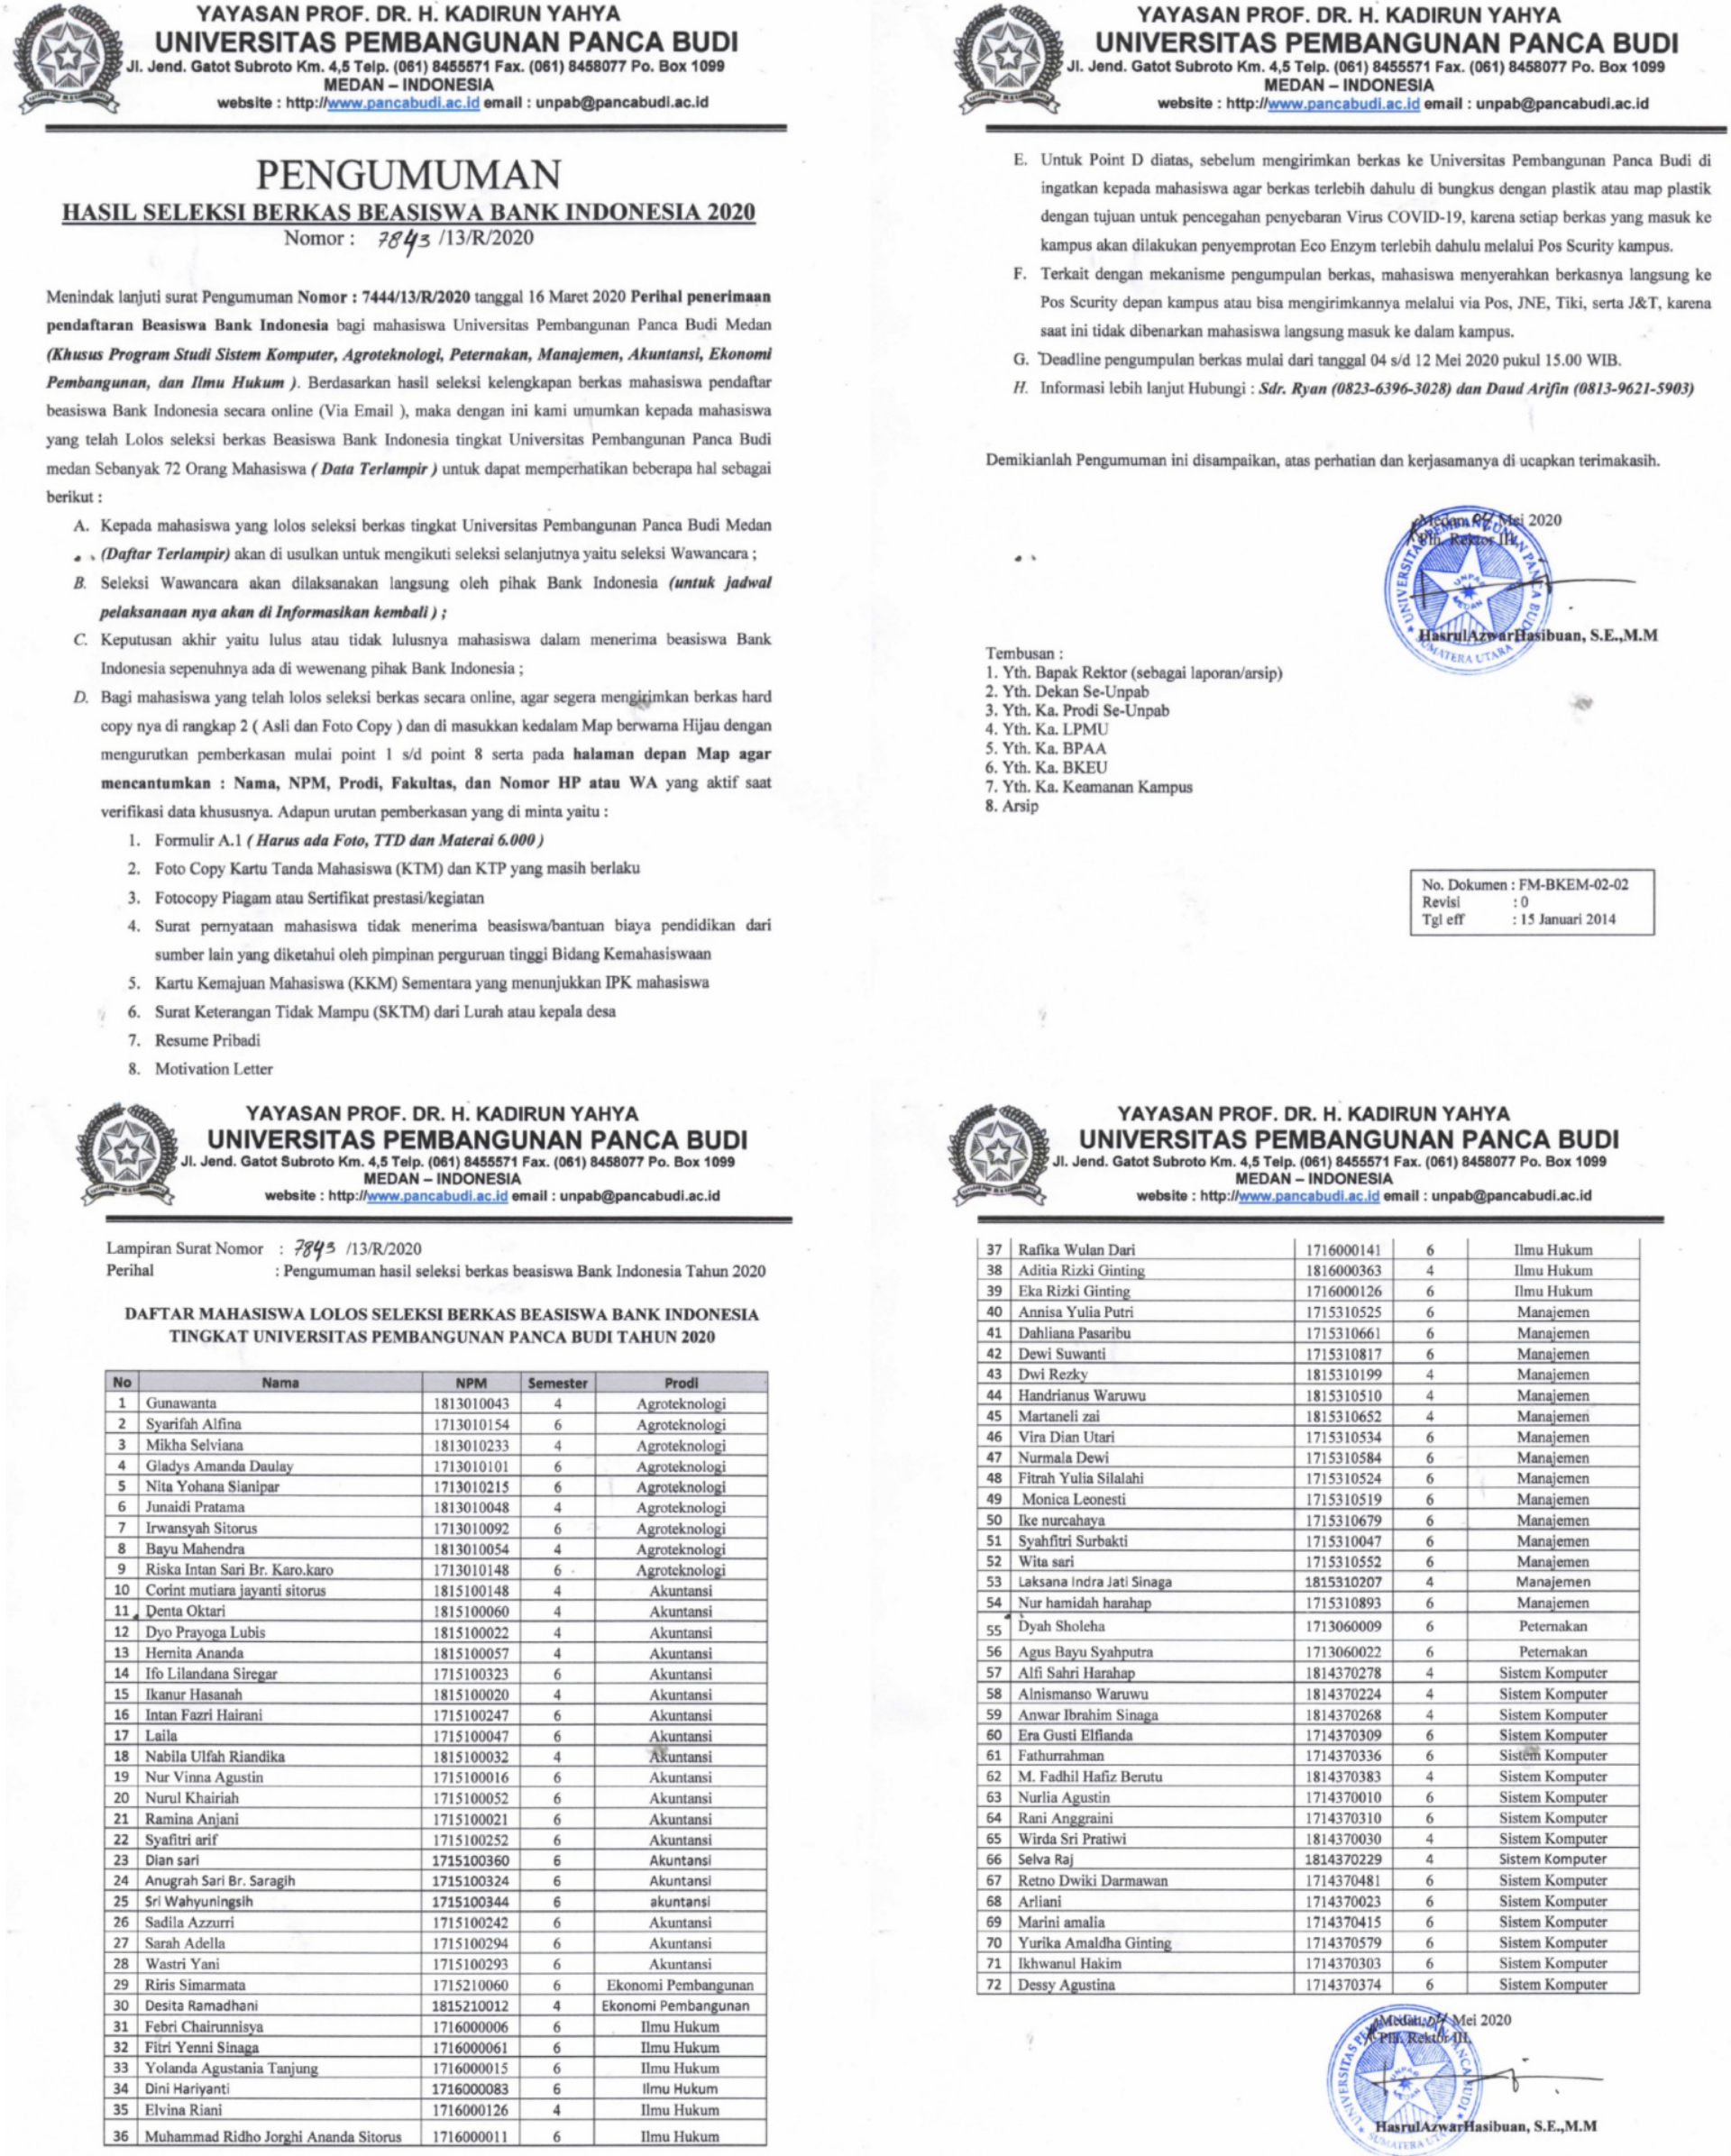 pengumuman-hasil-seleksi-berkas-beasiswa-bank-indonesia-2020_836970.jpg